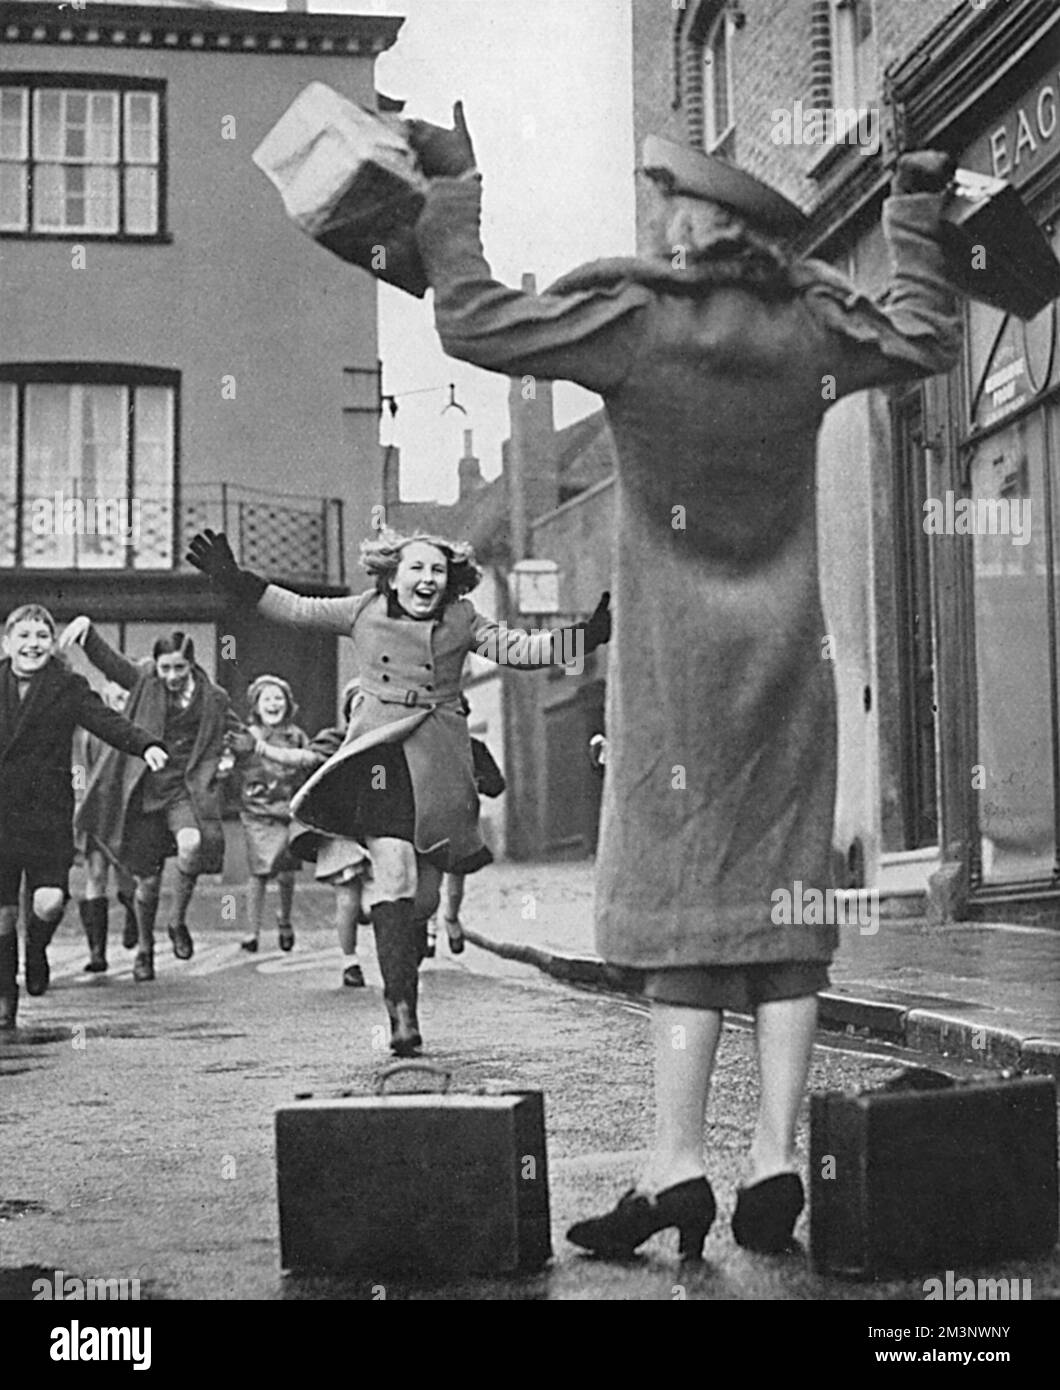 Ein kleines Mädchen, ein evakuiertes Mädchen in einem Sussex-Dorf, läuft auf wundervolle Weise auf ihre Mutter zu, die ihre Tochter auf einer Busreise von Peckham, Südost-London, besucht hat. Datum: 1939 Stockfoto